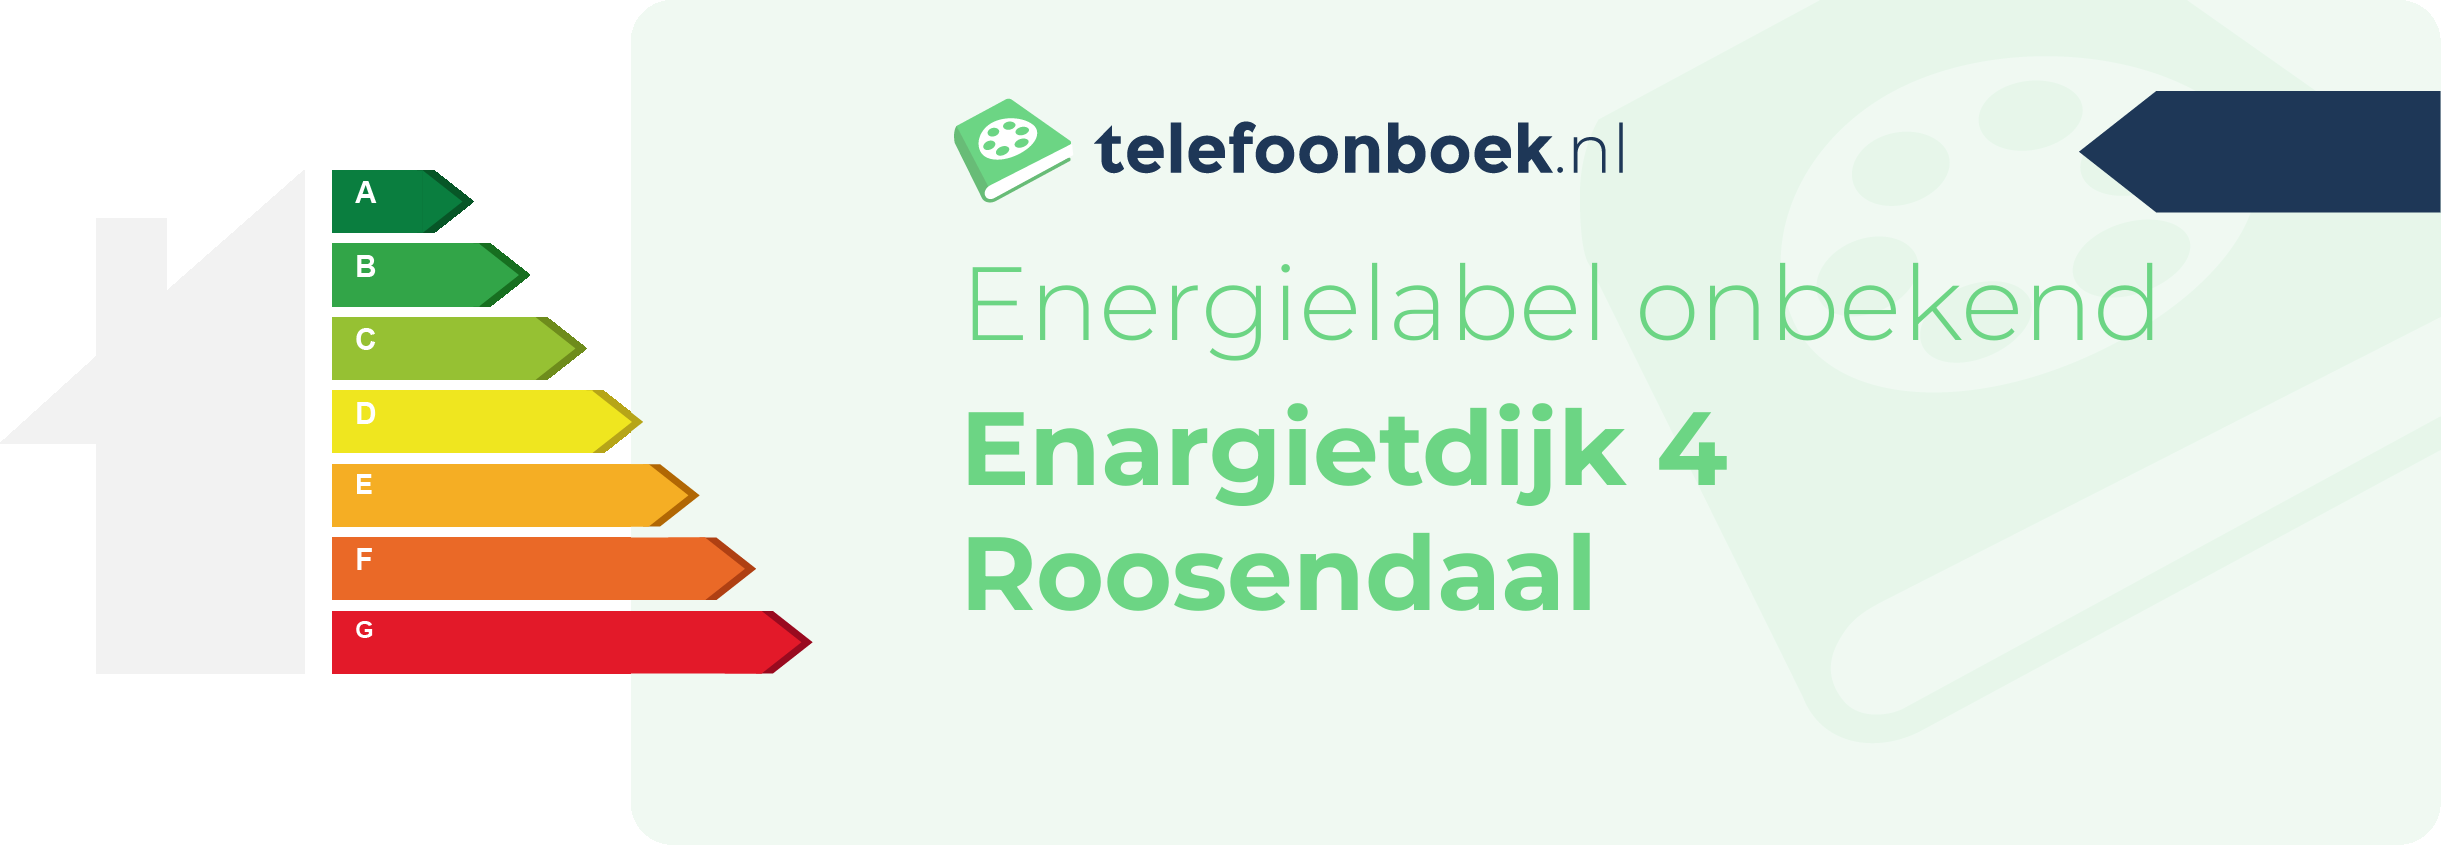 Energielabel Enargietdijk 4 Roosendaal